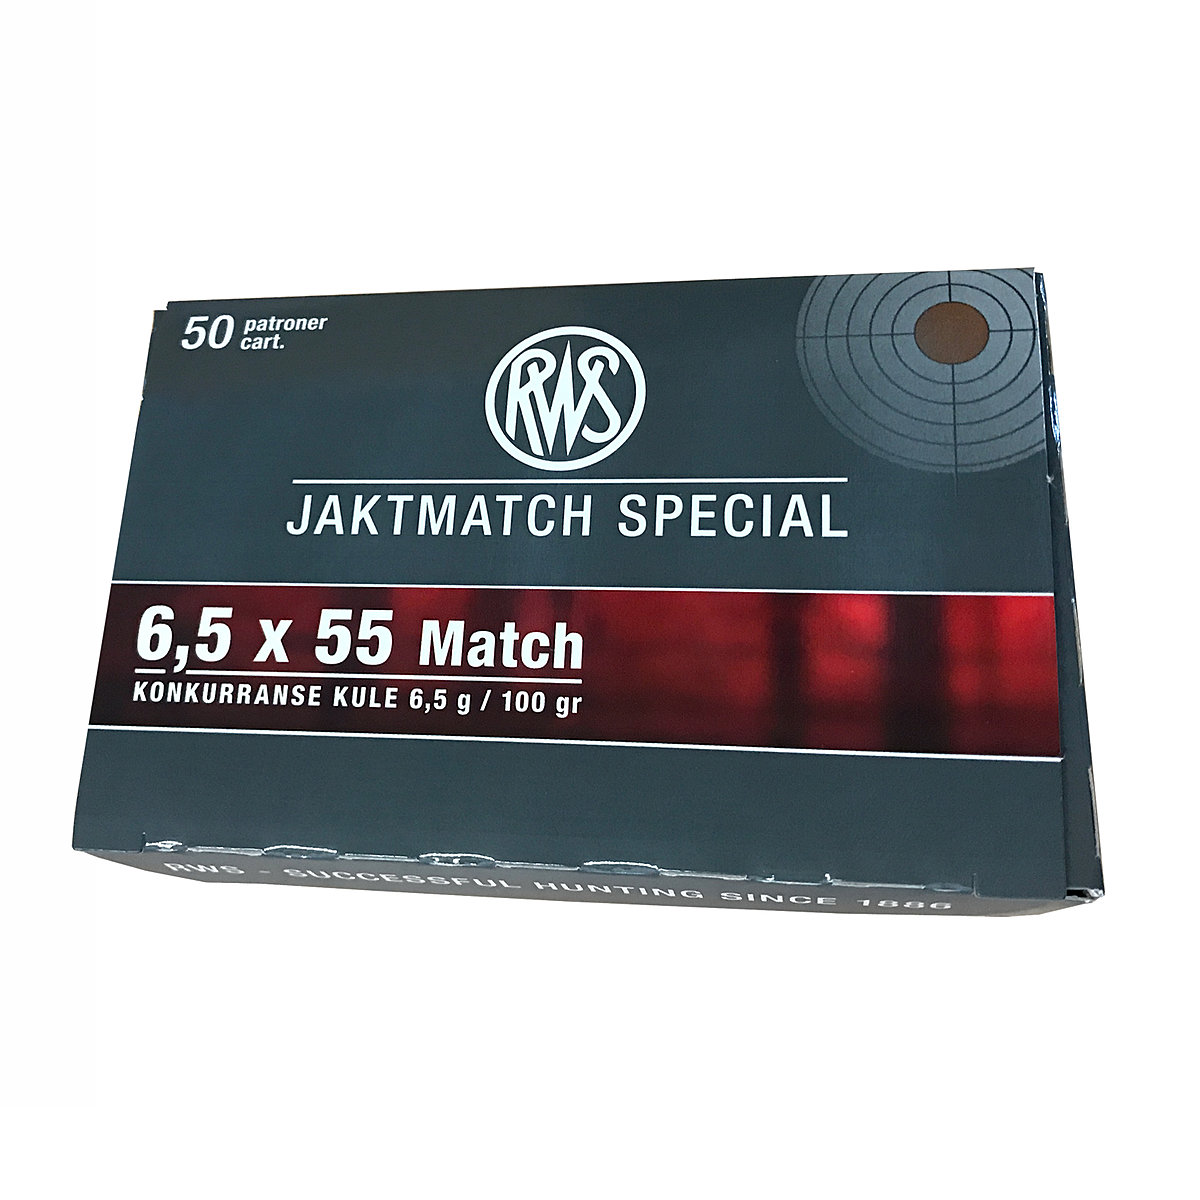 RWS Jaktmatch Special 6,5 x 55 Match 6,5g - 50 Stck.